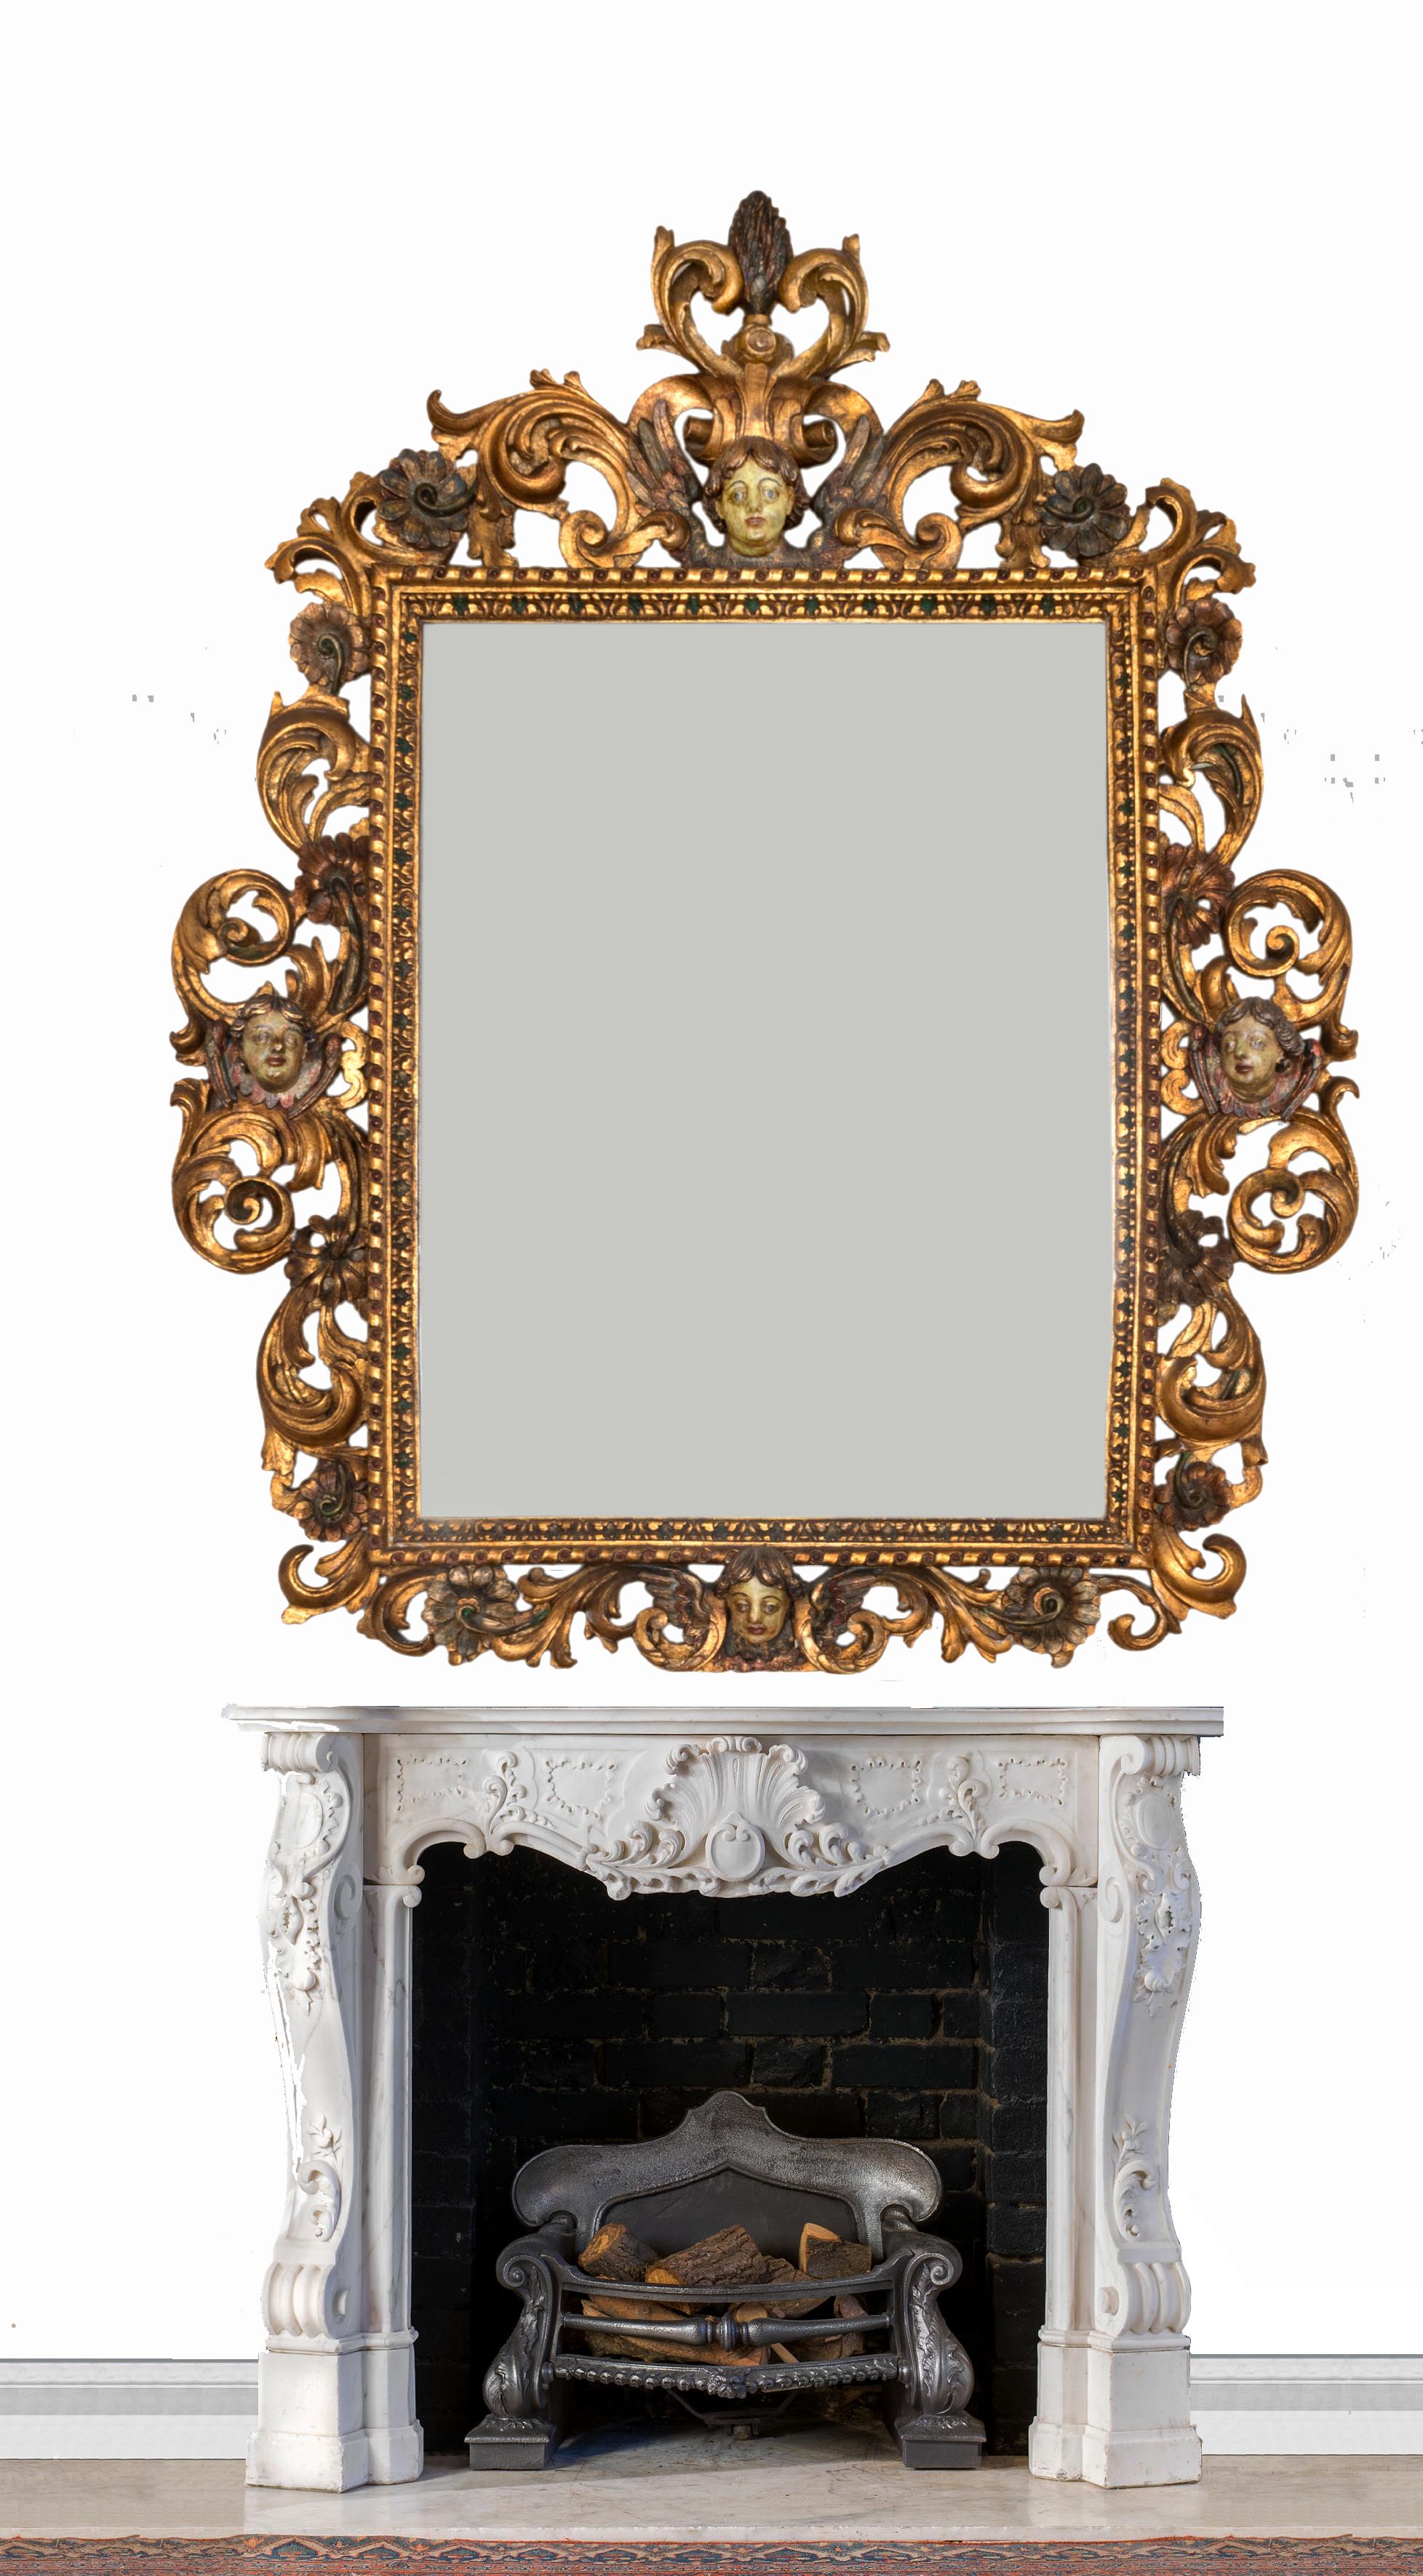 18th Century Portuguese Baroque Period Golden Gilt Mirror For Sale 1